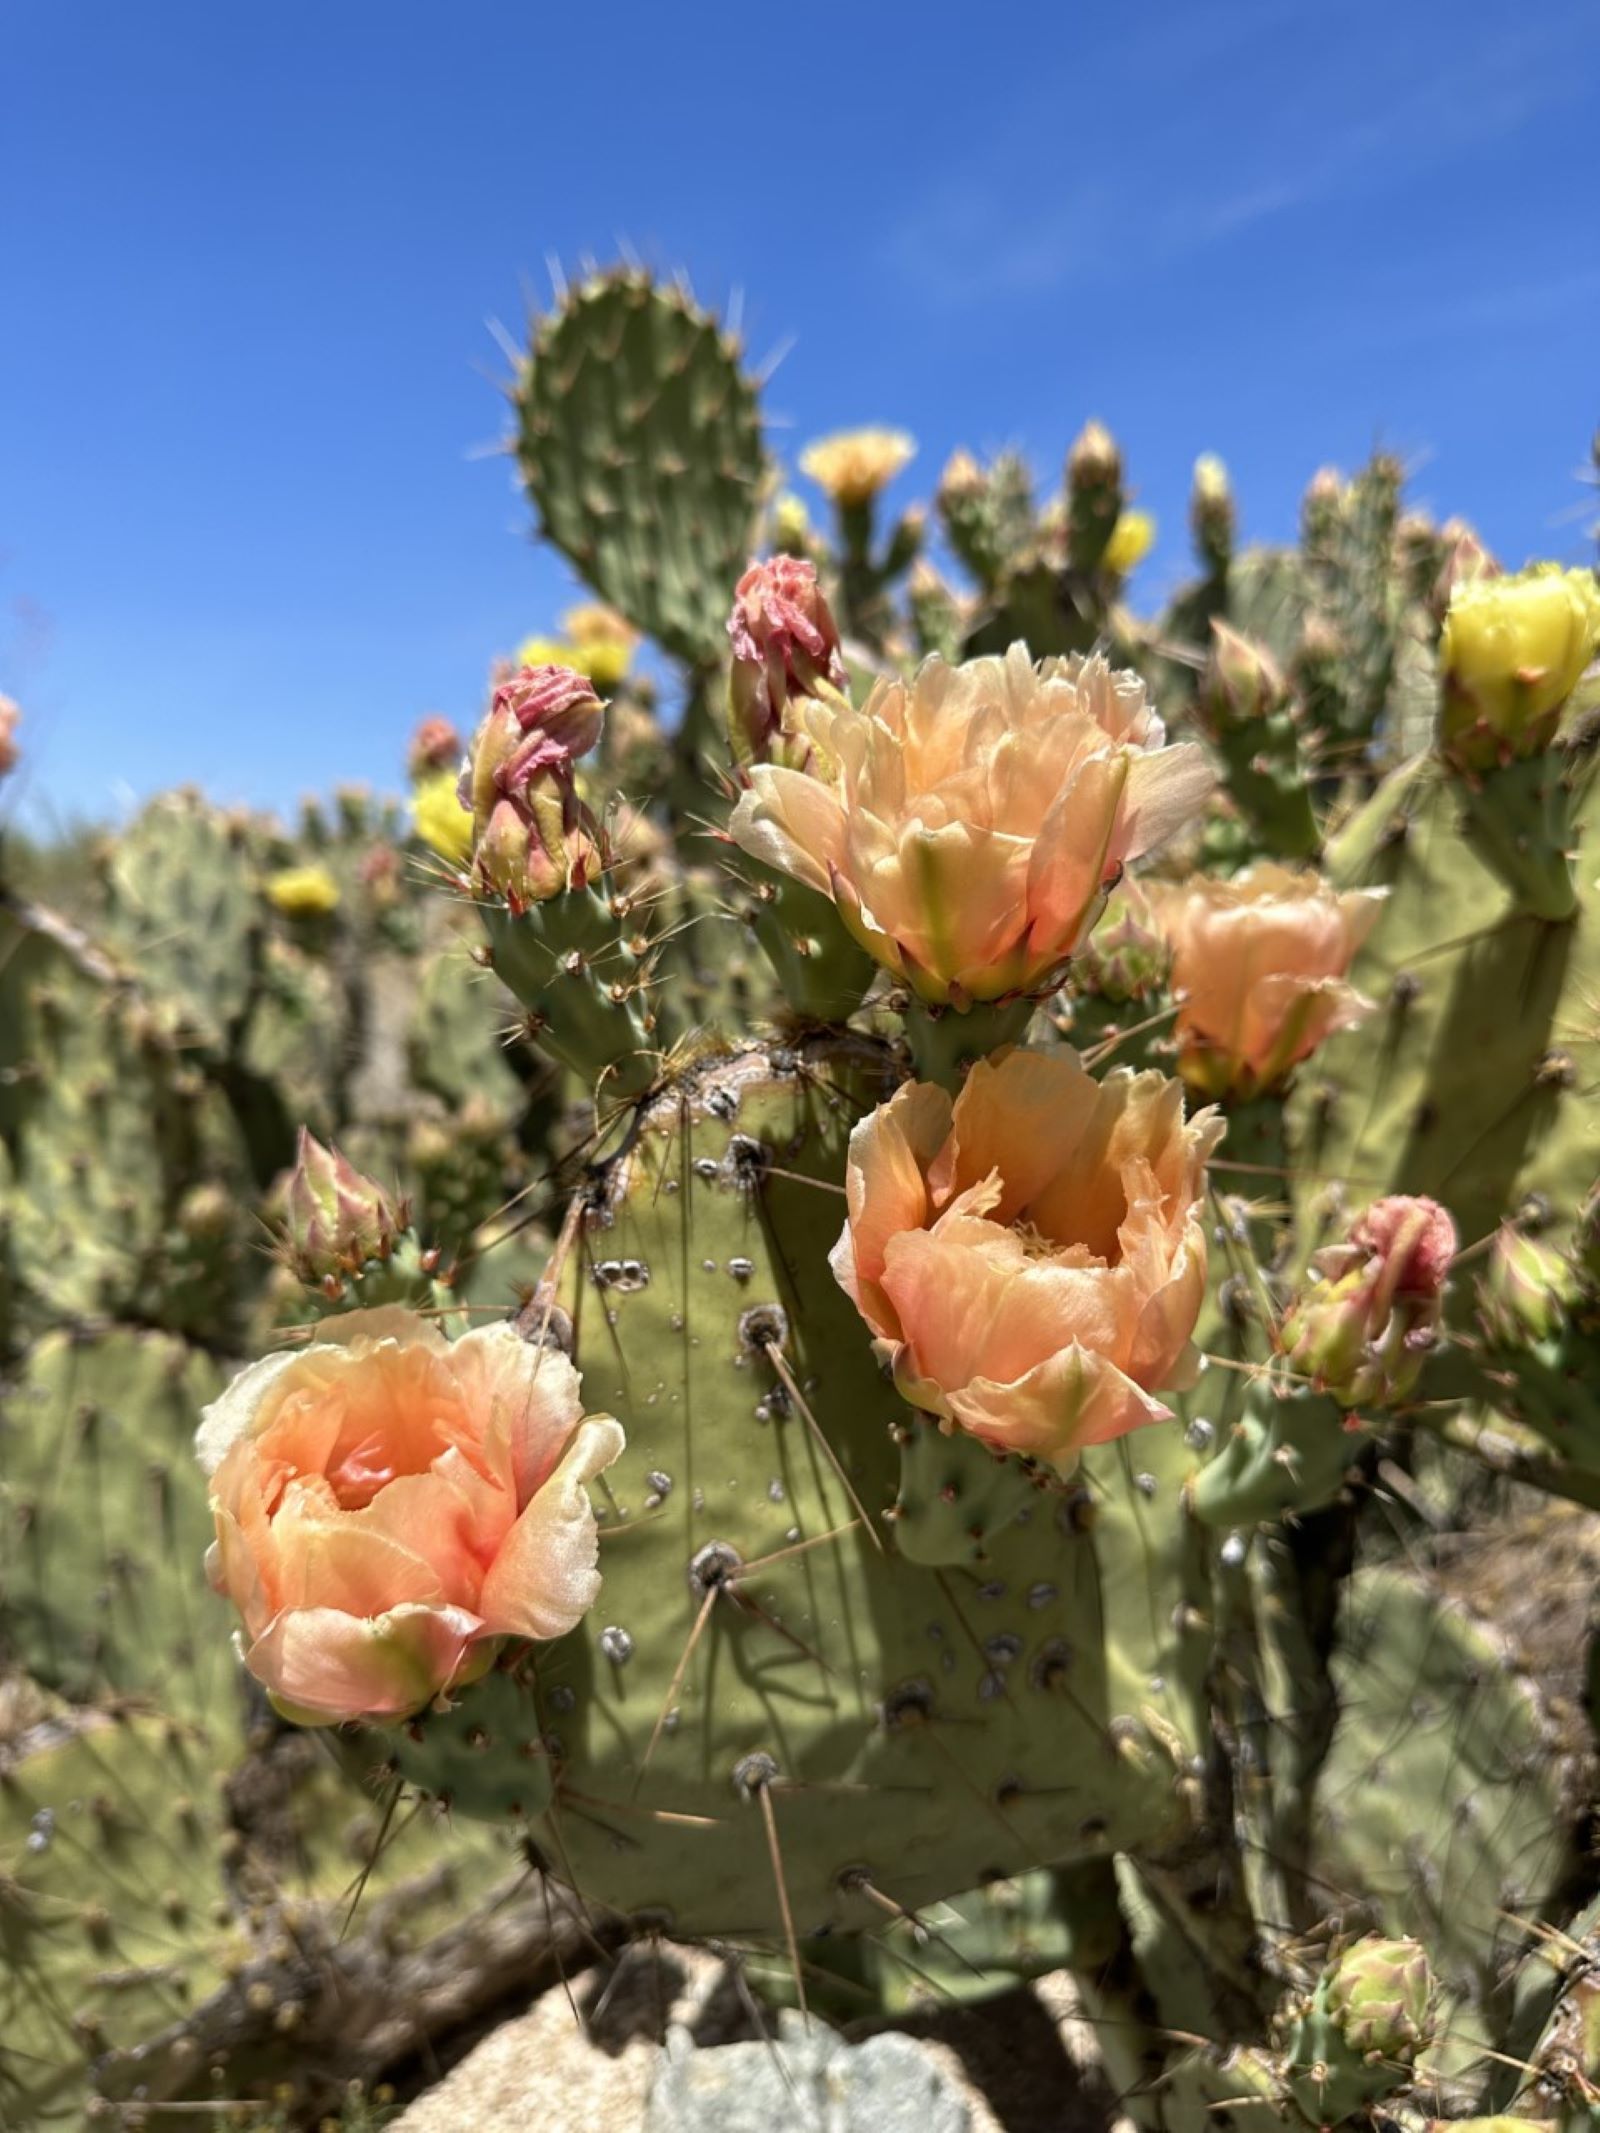 Field Guide to Arizona's Sonoran Desert Wildflowers